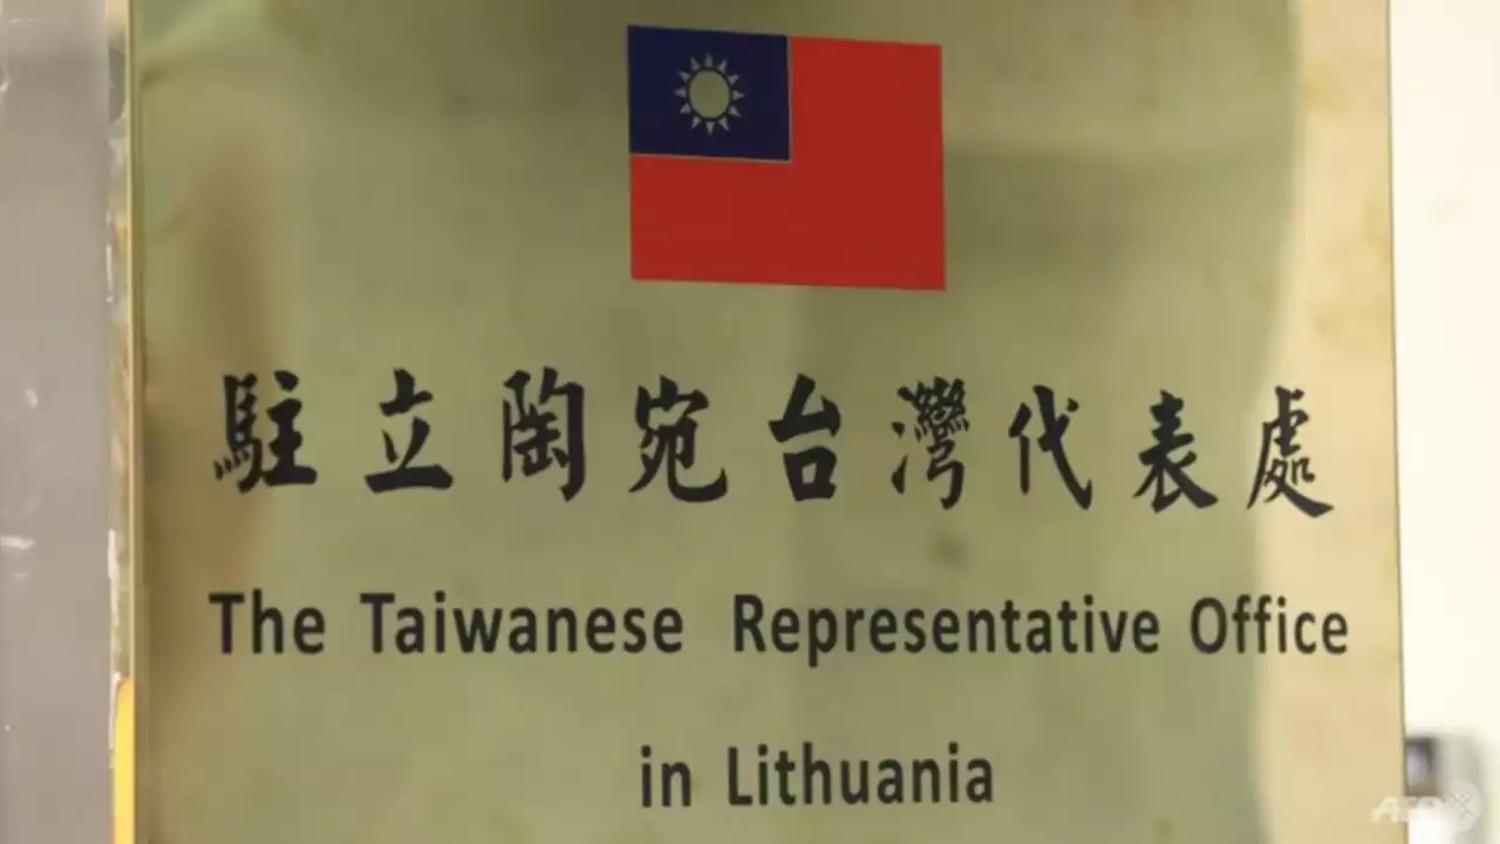 Đài Loan tên văn phòng đại diện:
Việc đặt tên cho một văn phòng đại diện là một điều quan trọng trong việc xây dựng thương hiệu cho doanh nghiệp. Tên văn phòng đại diện Đài Loan đầy ý nghĩa và tượng trưng cho sự phát triển bền vững. Hãy tìm hiểu thêm về tên văn phòng đại diện này trong hình ảnh liên quan đến Đài Loan.